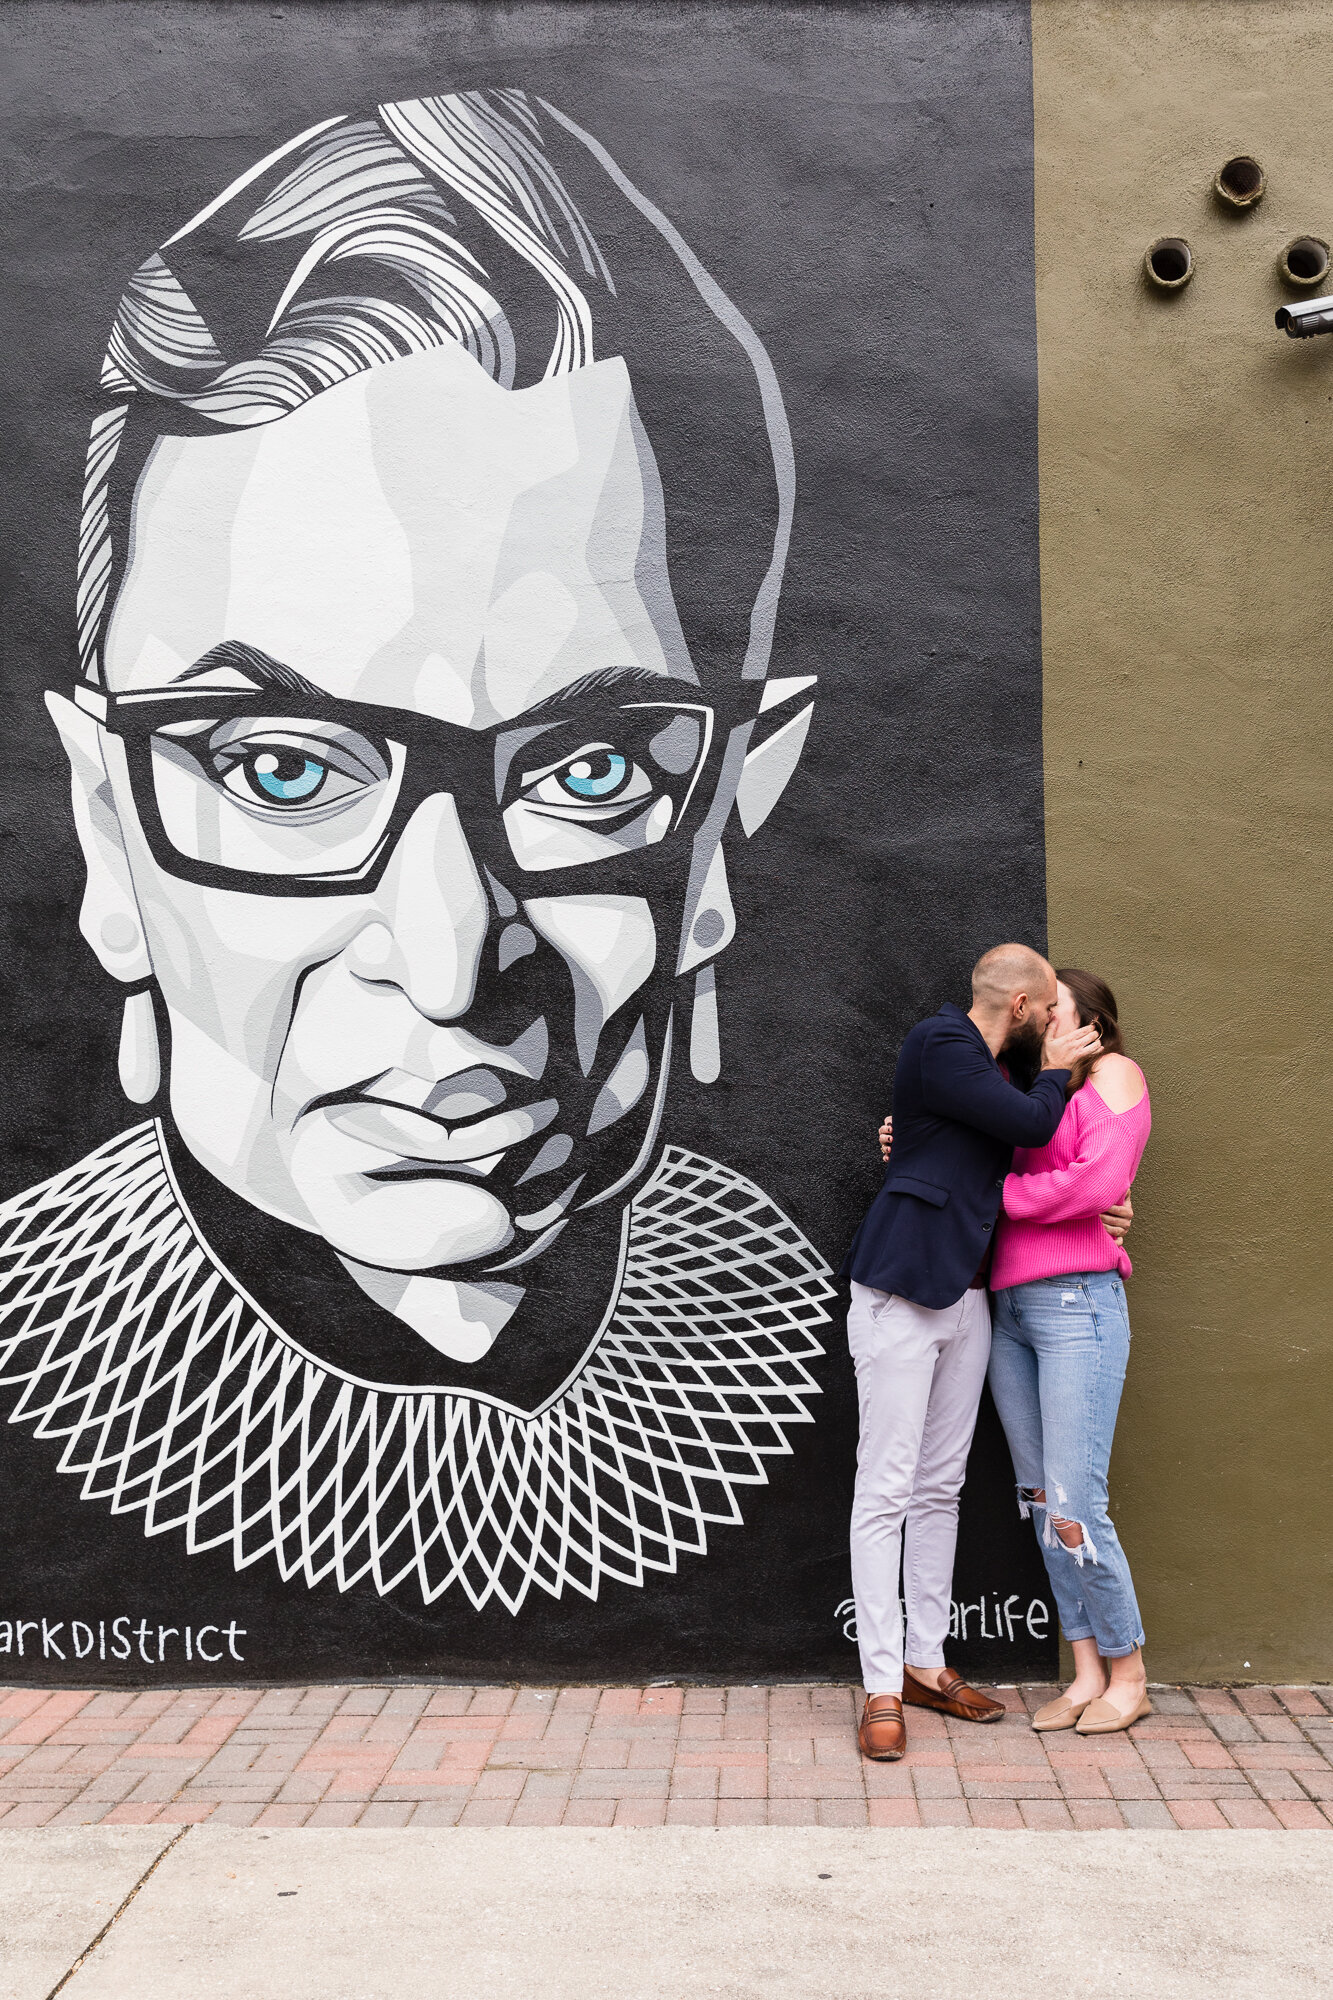  Marriage Proposal at Orlando's Ruth Bader Ginsburg Mural  